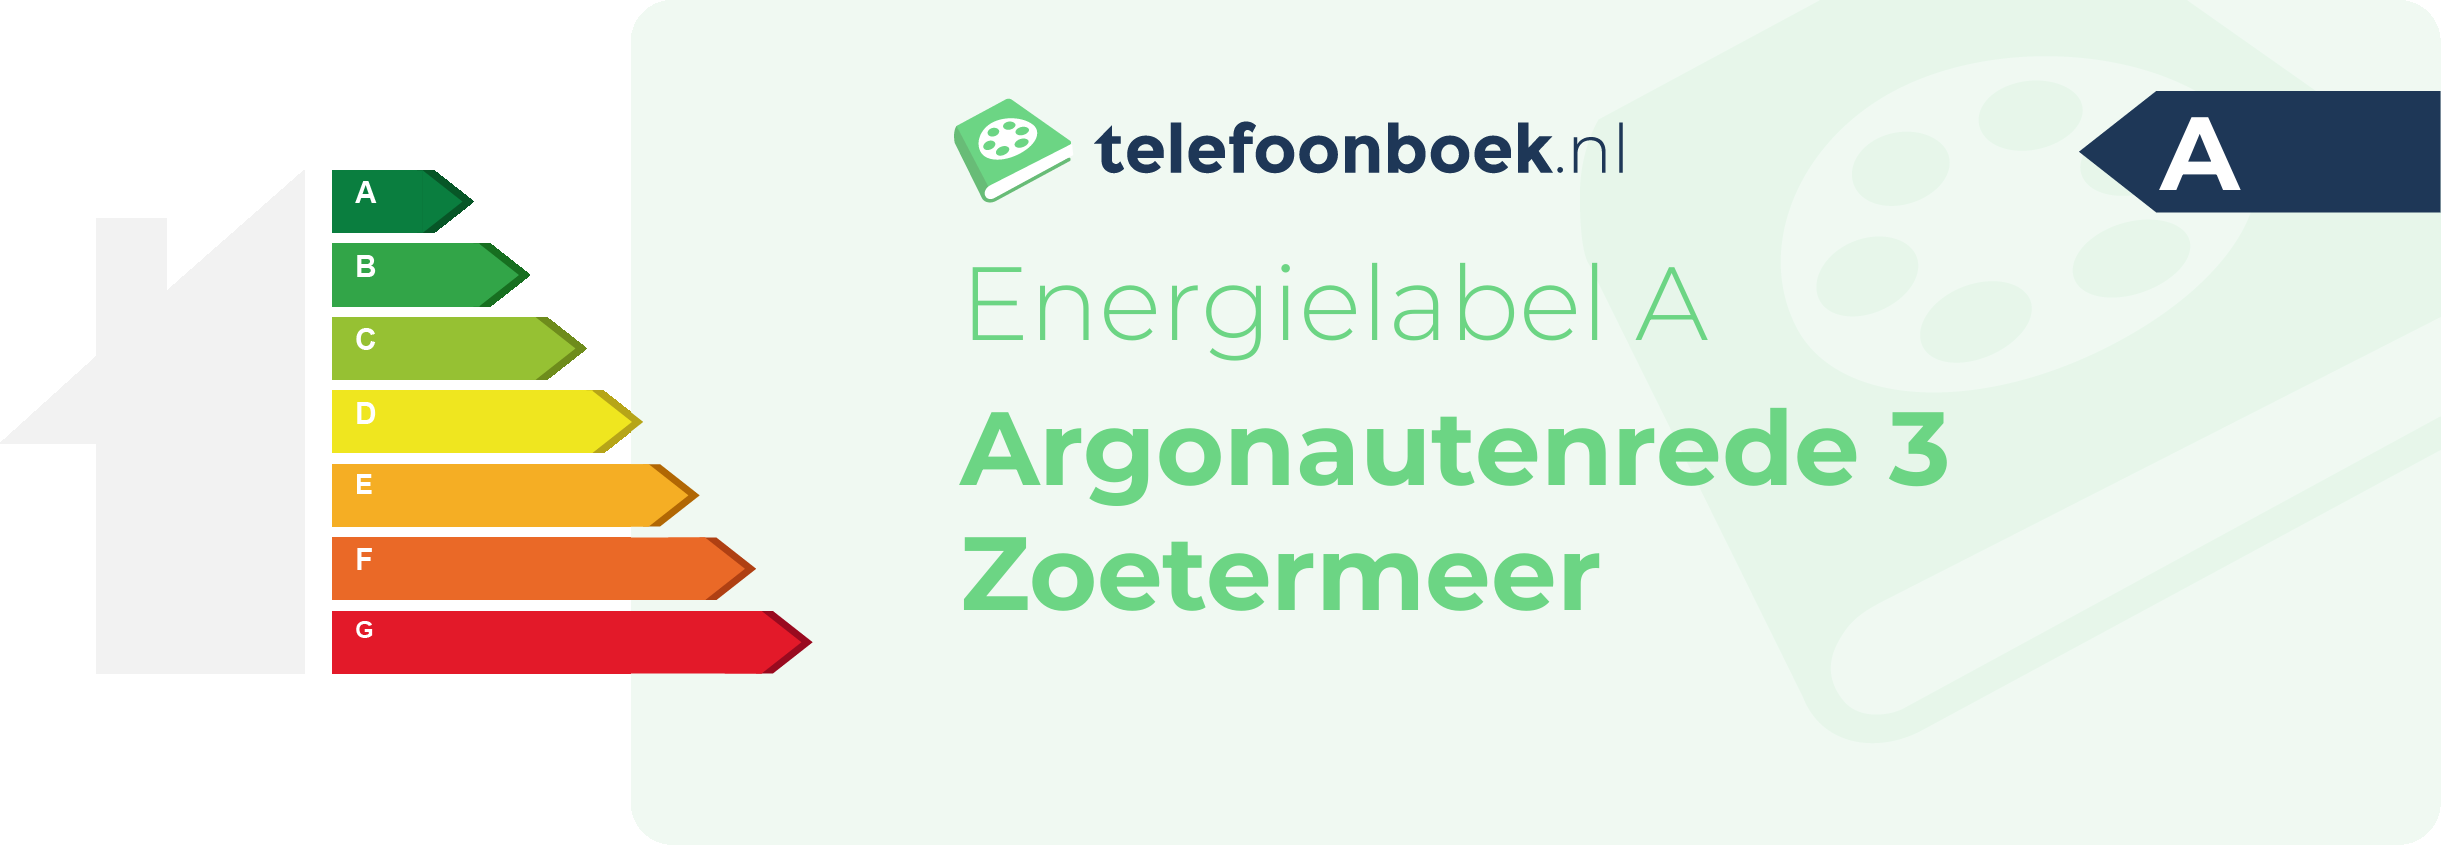 Energielabel Argonautenrede 3 Zoetermeer